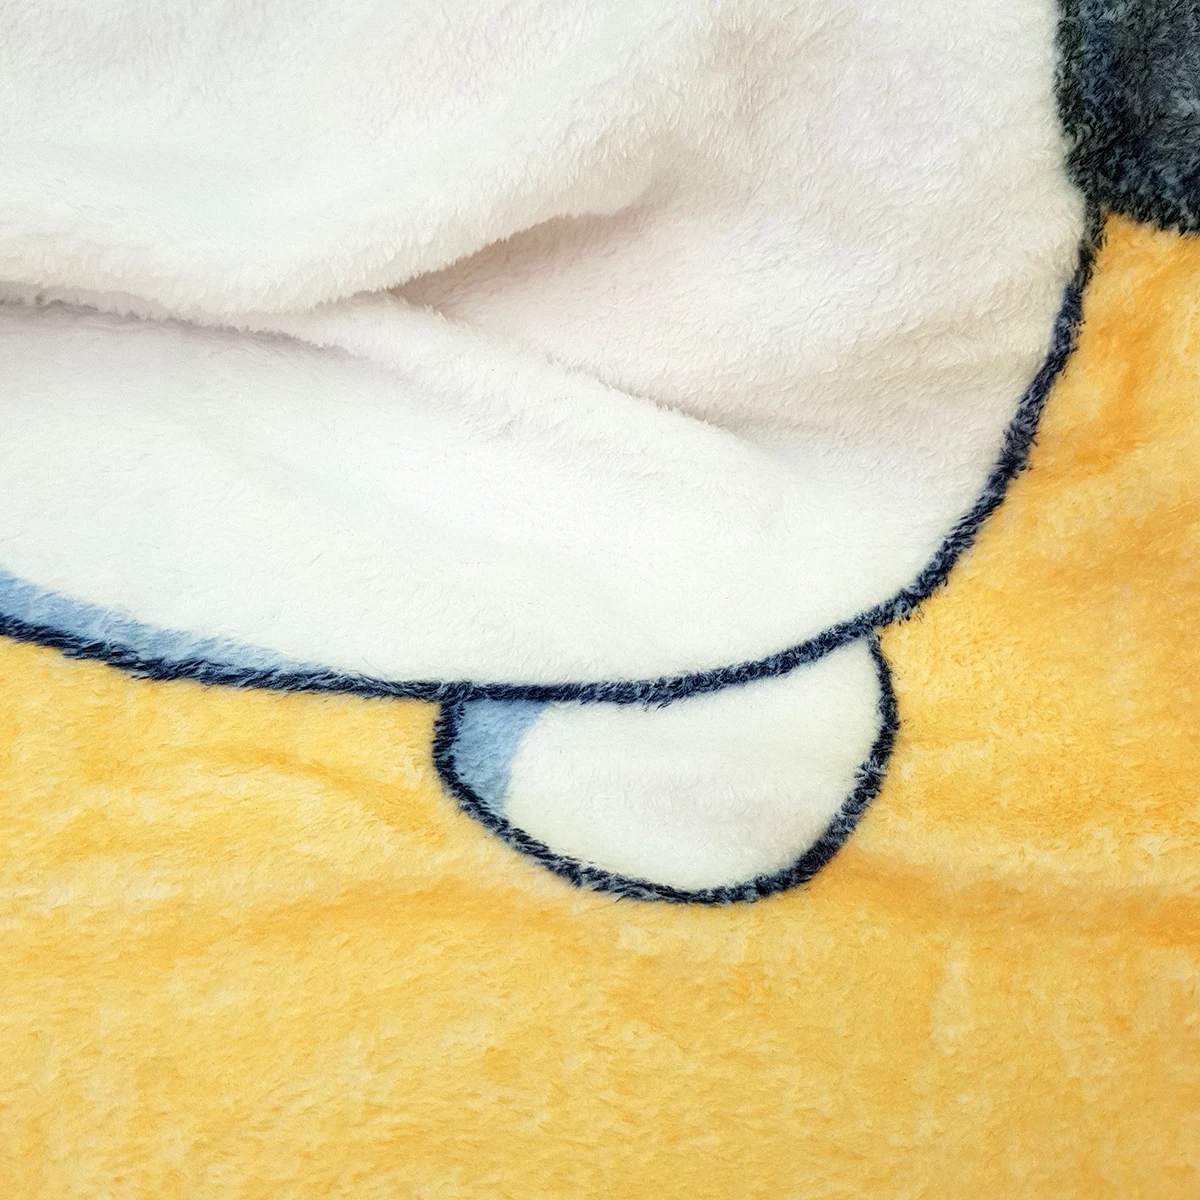 Оккультное одеяло иллюстрация среднего хрустального шара для мистики с татуированными руками будущее экстрасенс теплое одеяло s для кроватей